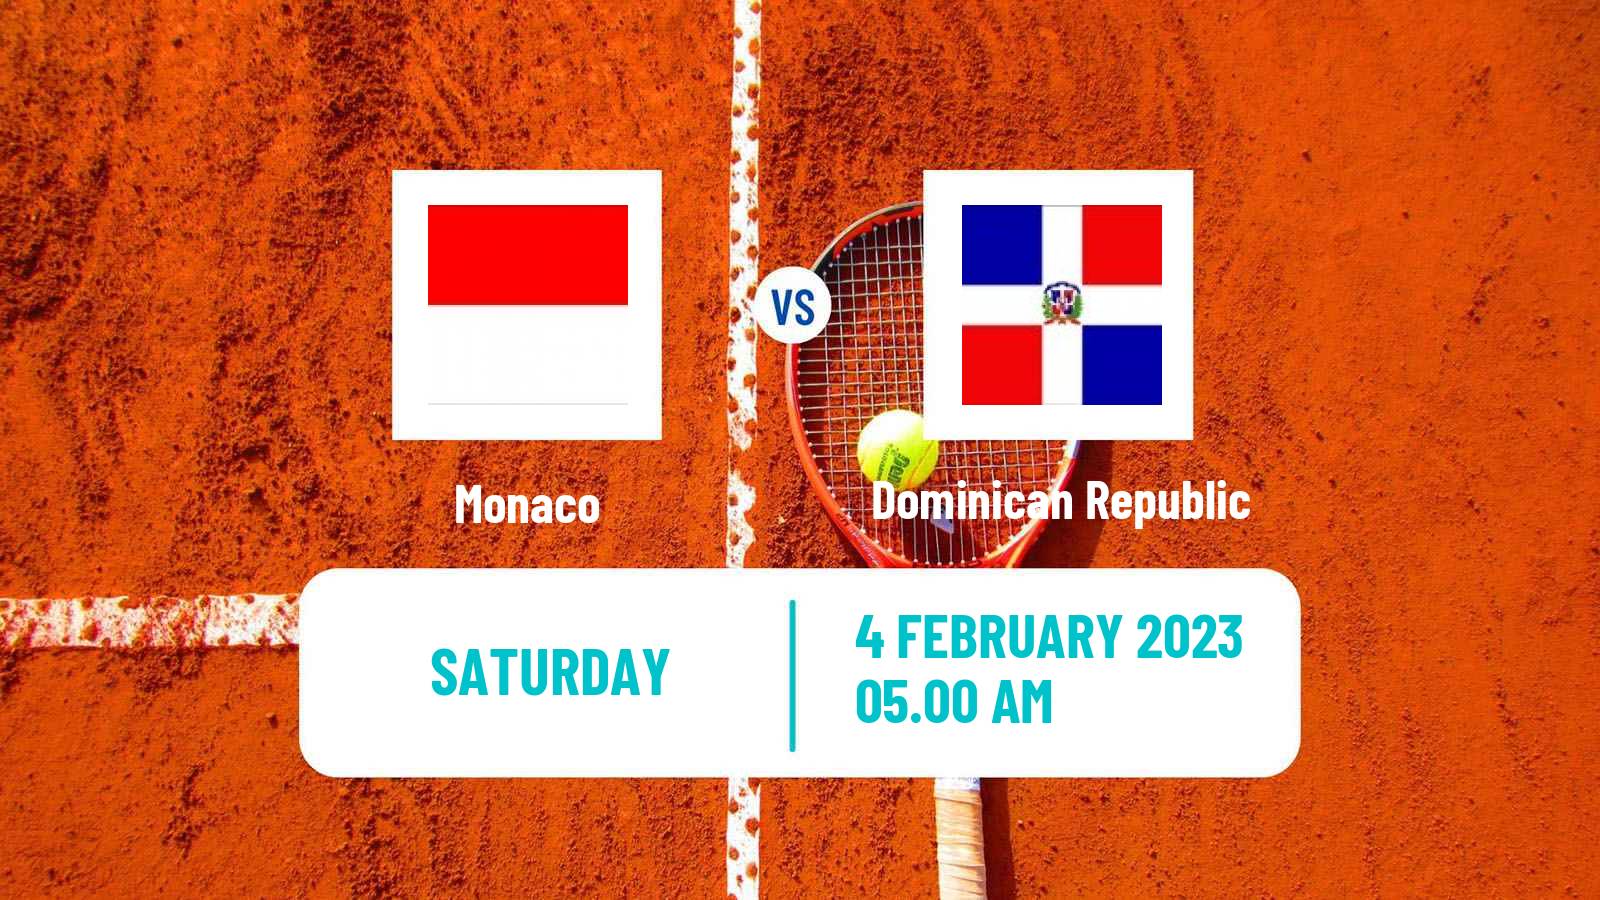 Tennis Davis Cup World Group II Teams Monaco - Dominican Republic